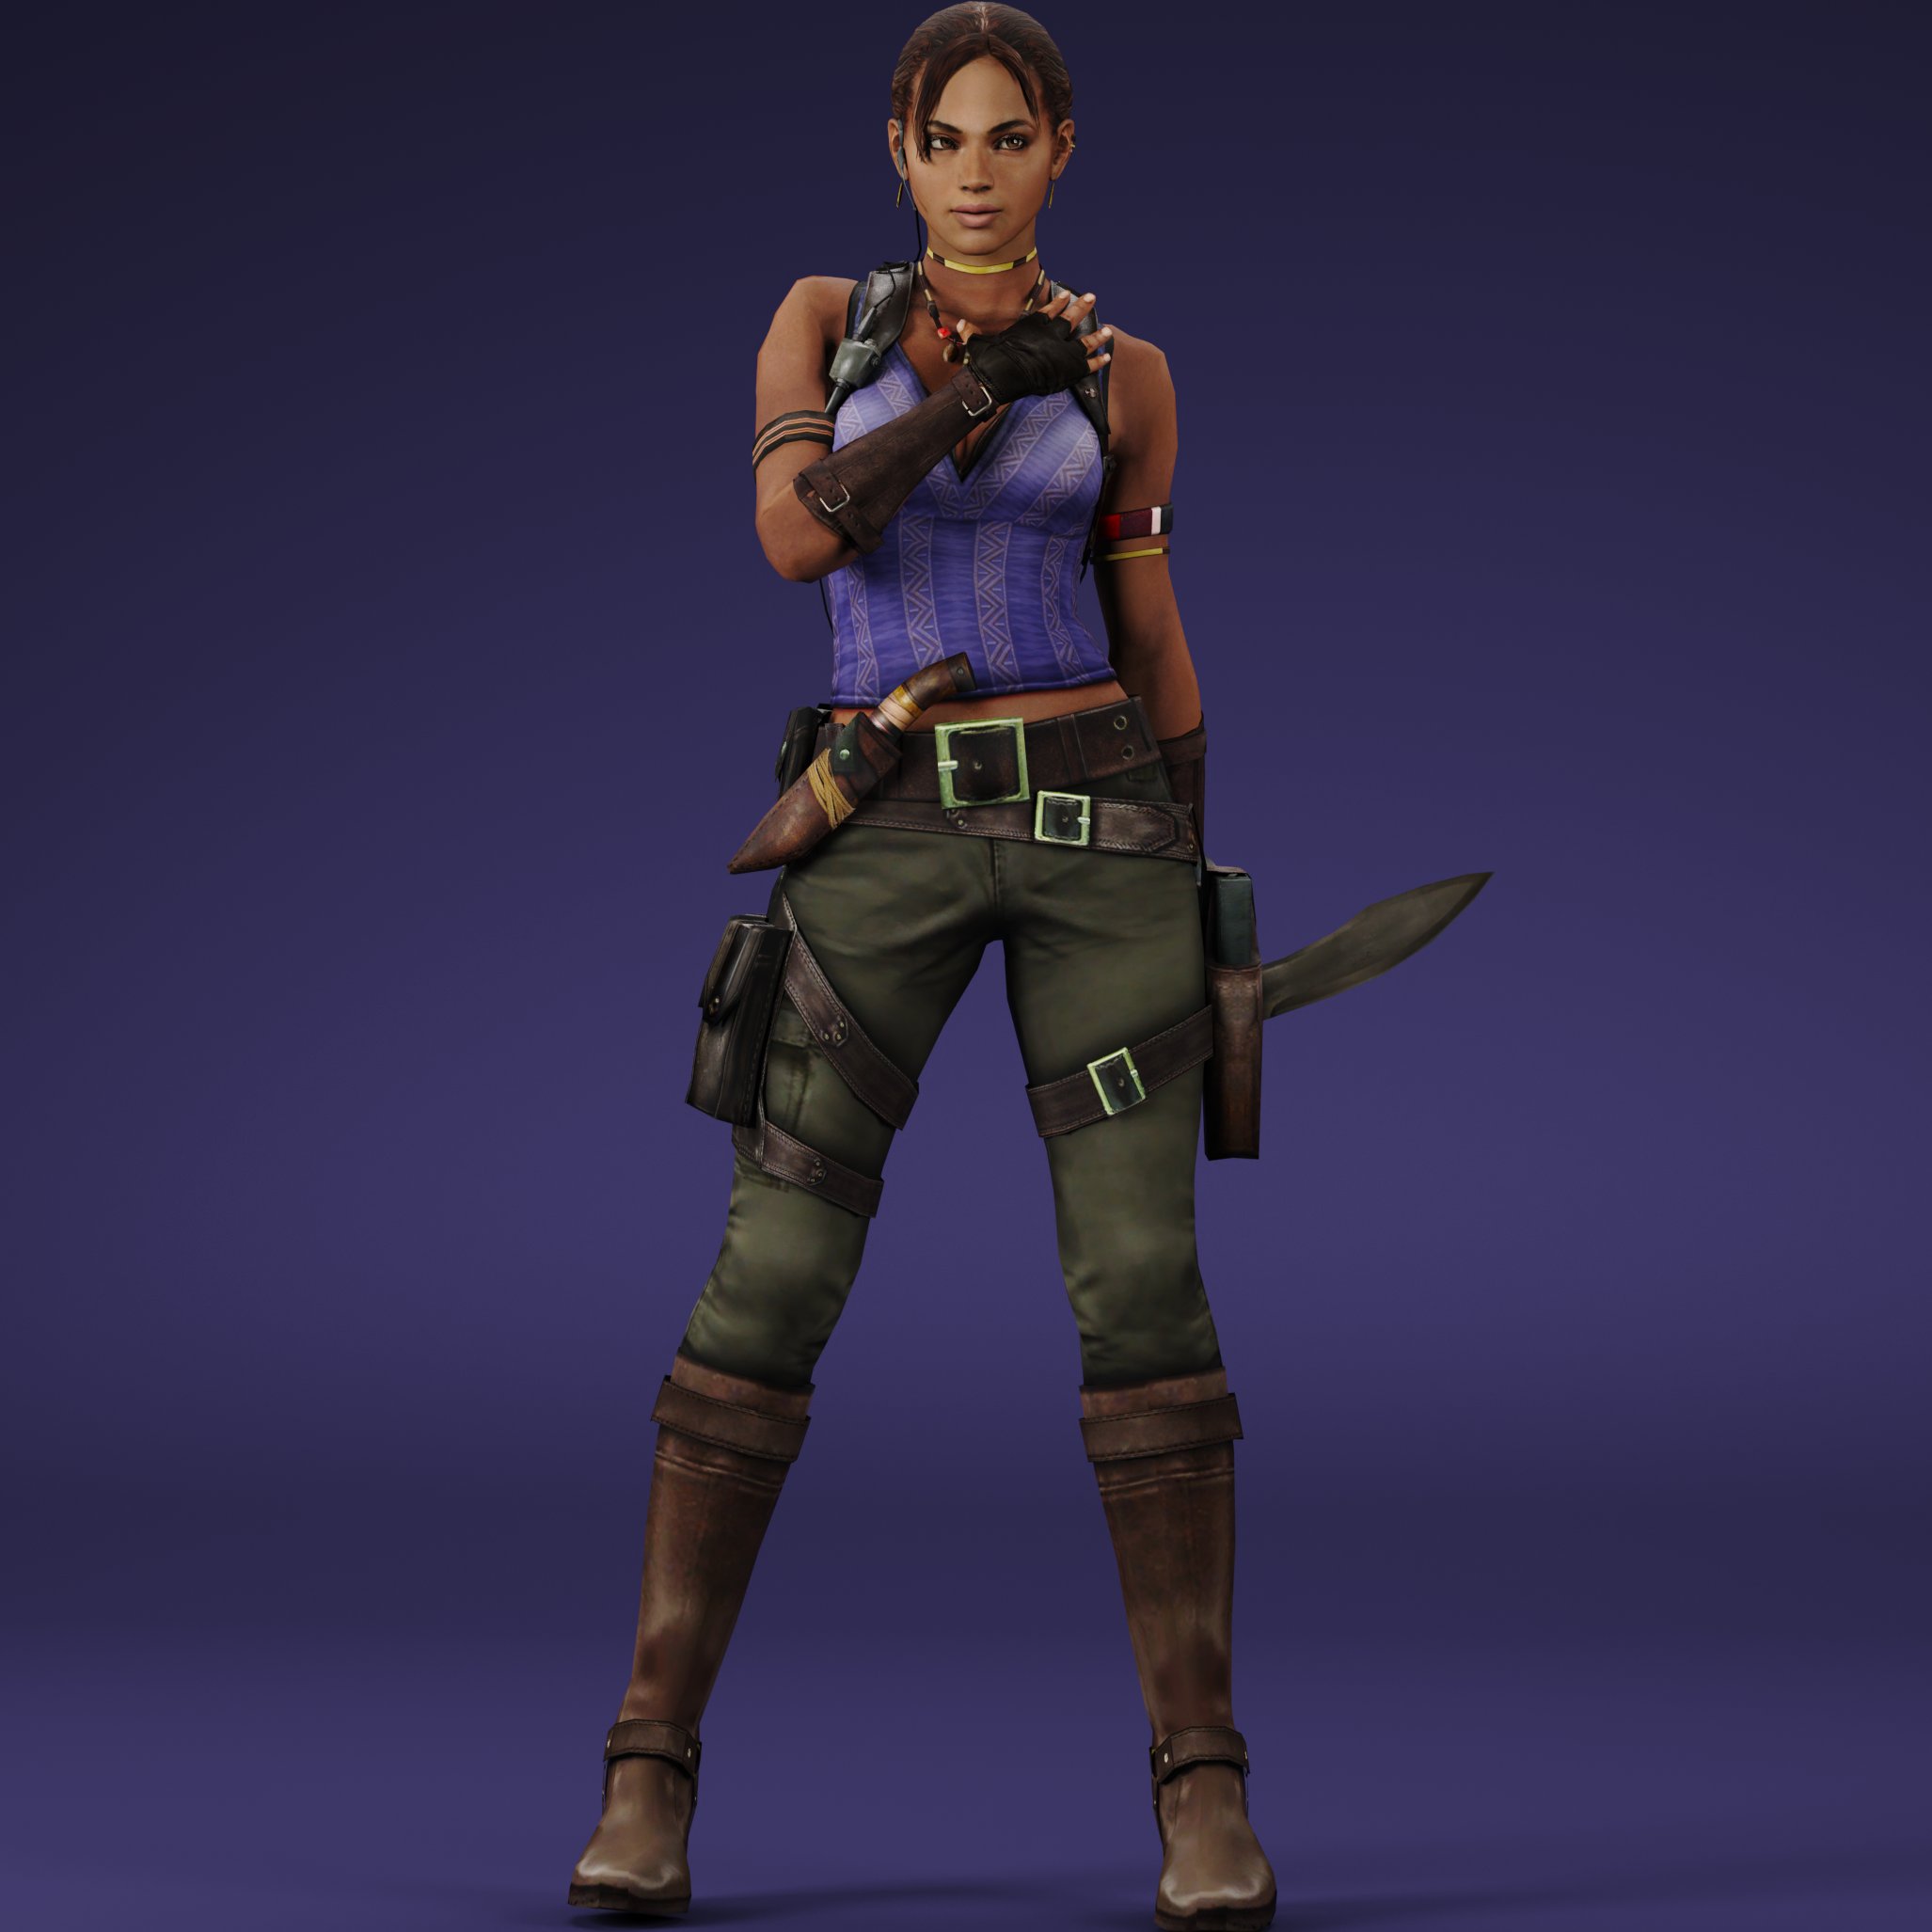 General 2054x2054 Sheva Alomar Resident Evil 5 weapon Resident Evil video games video game characters